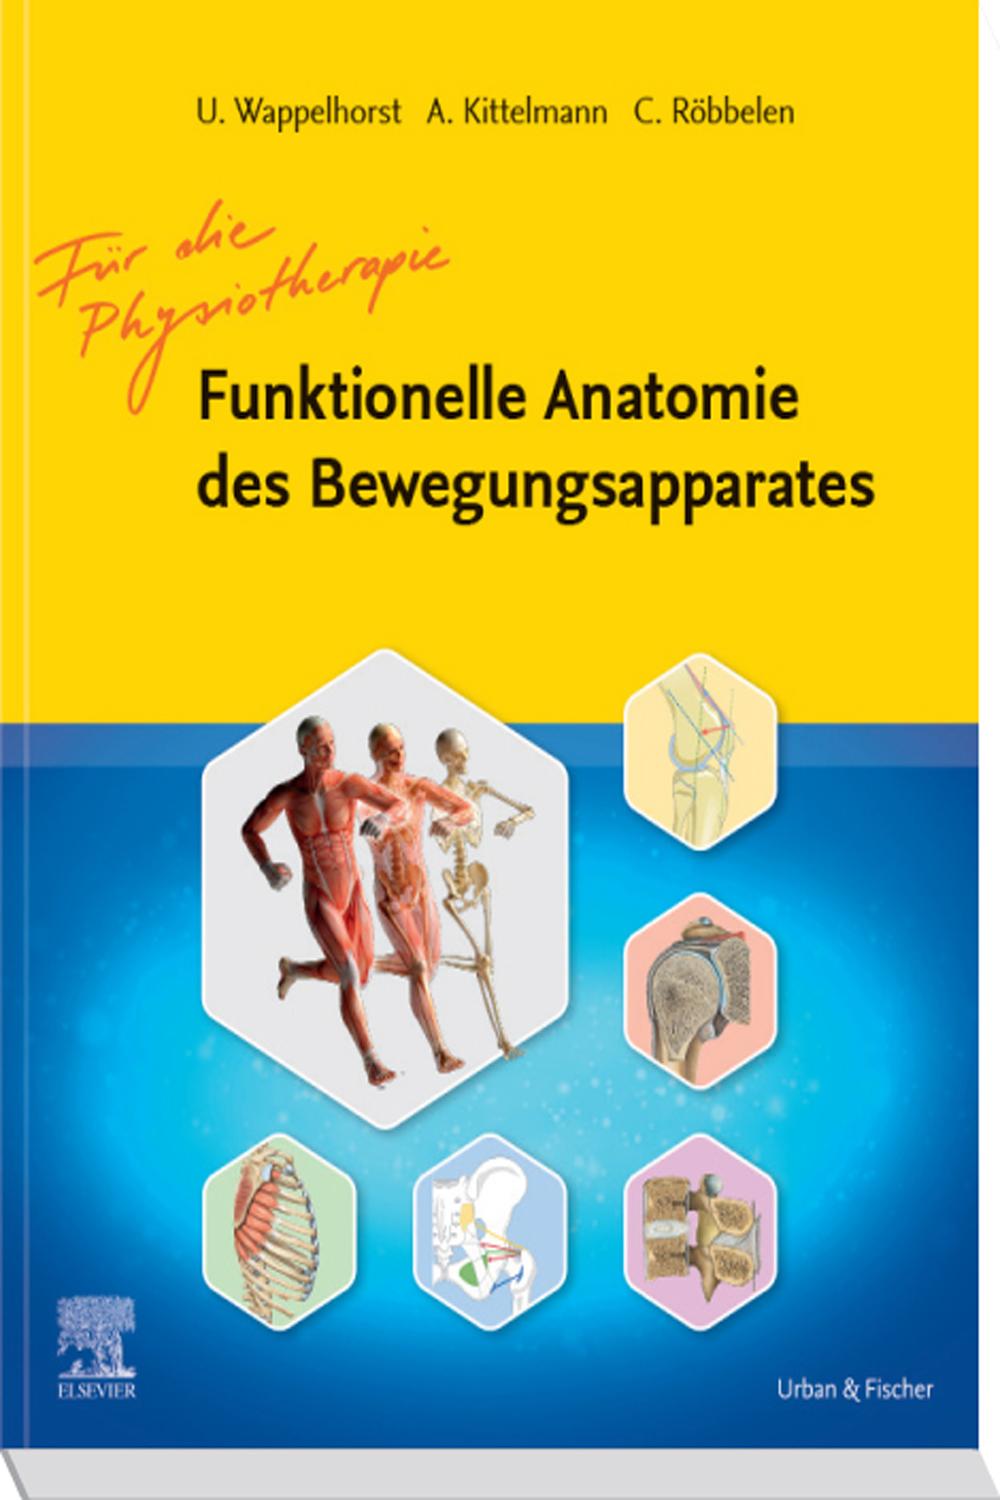 Funktionelle Anatomie des Bewegungsapparates - Lehrbuch - Ursula Wappelhorst, Andreas Kittelmann, Christoph Röbbelen